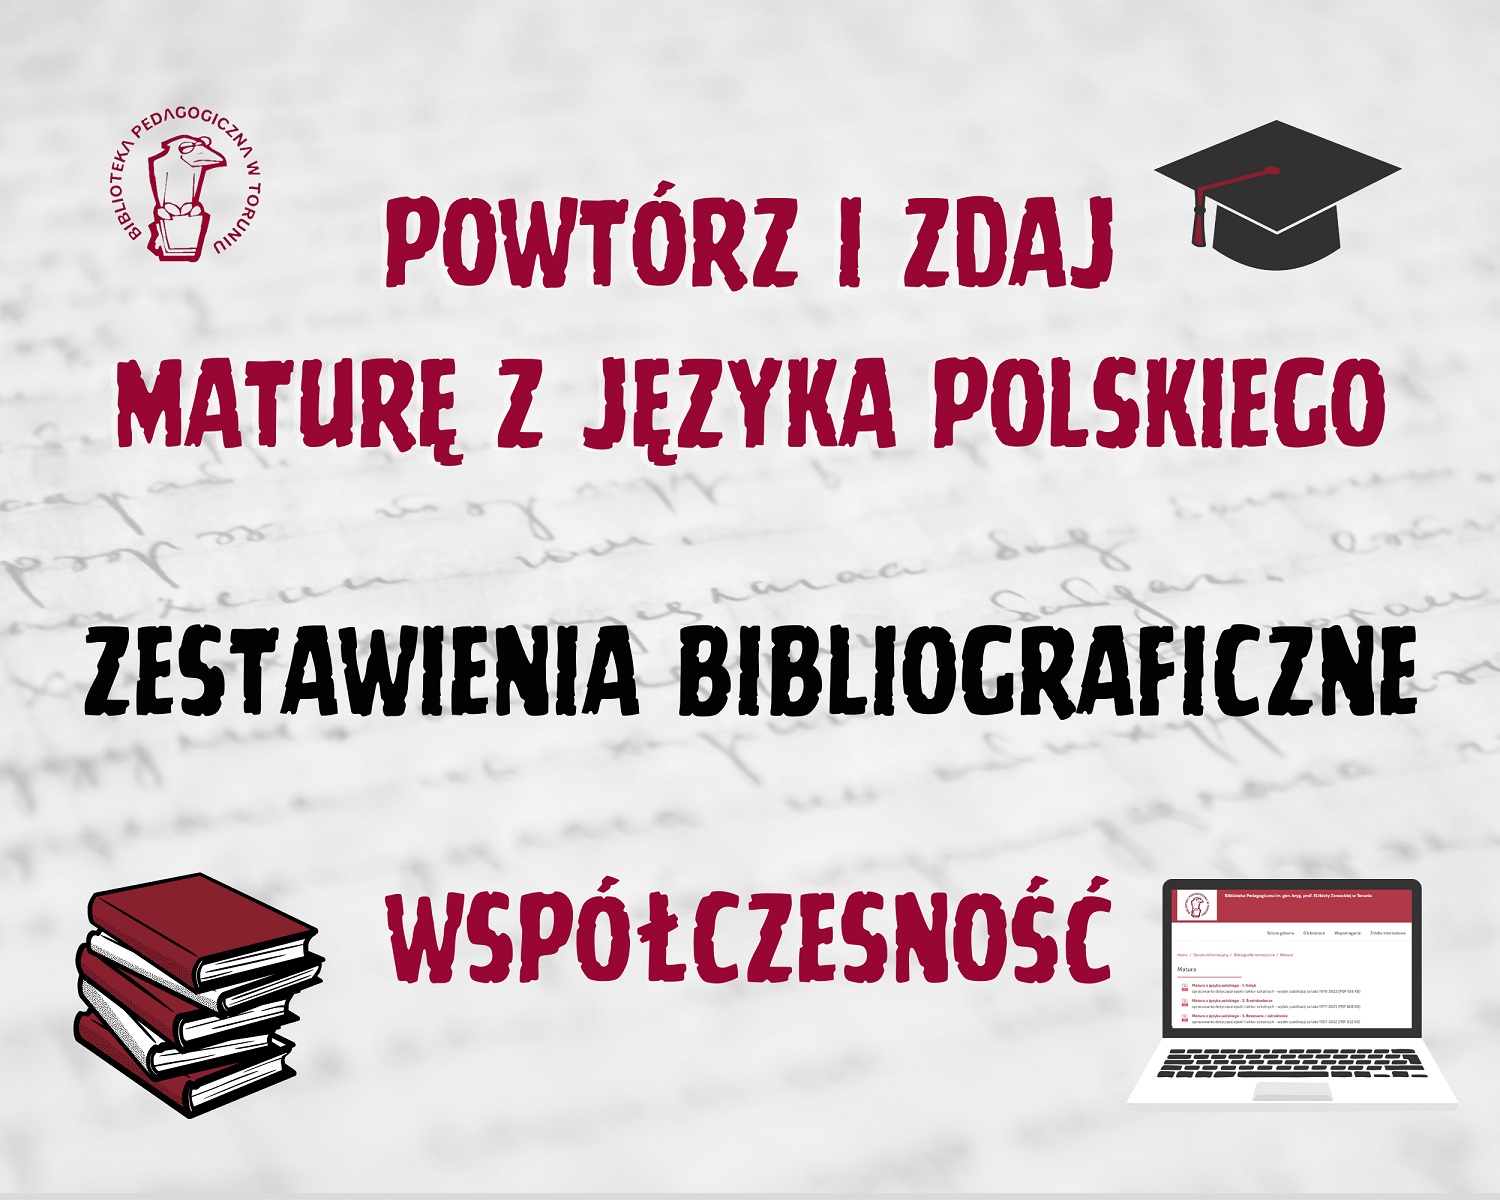 Powtórz i zdaja maturę z języka polskiego - zestawienia bibliograficzne: współczesność